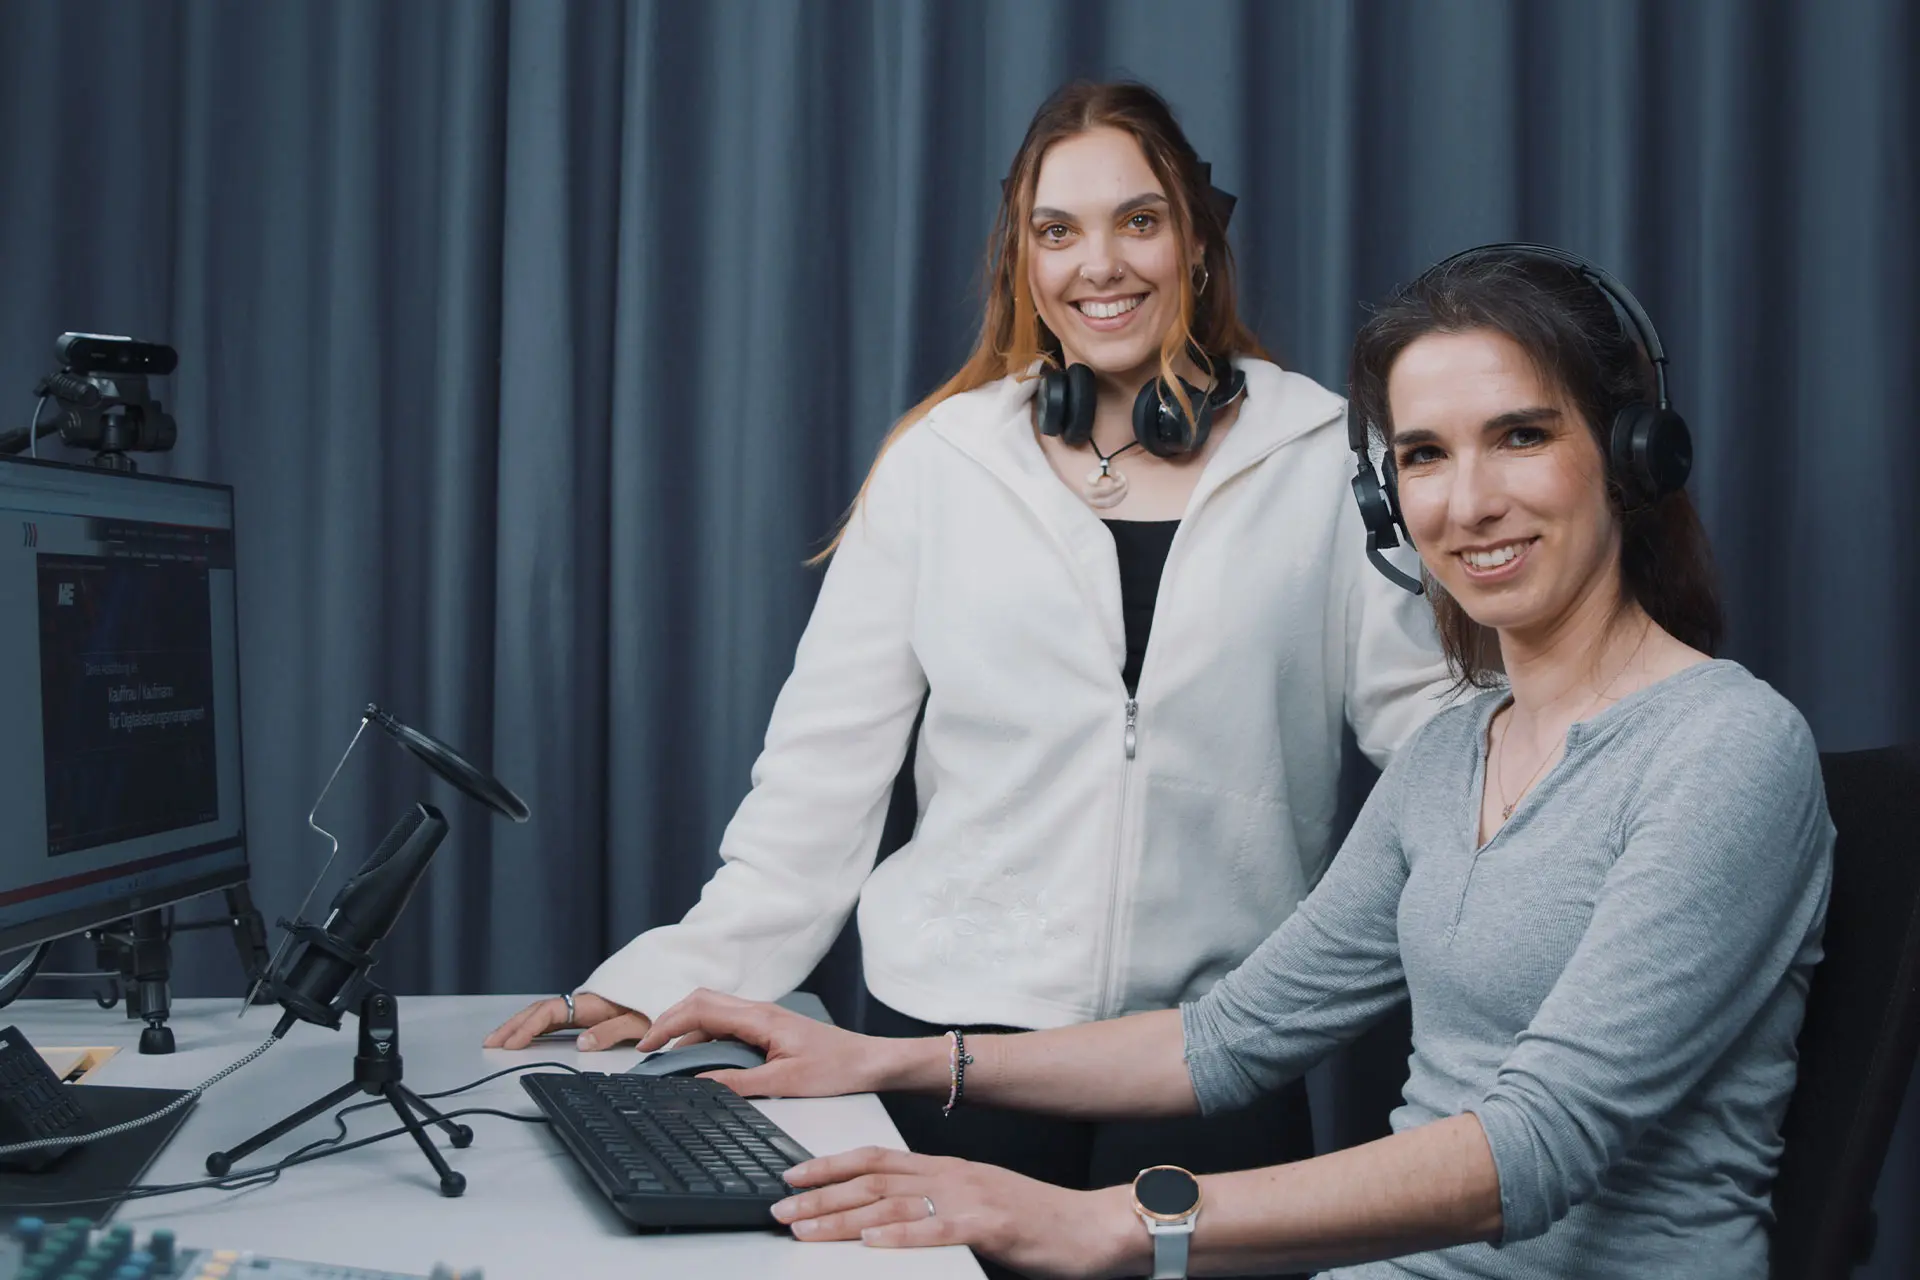 Unsere Coaches für den Live Stream ME Berufe, Theresa und Tina, in ihrem Kölner Studio